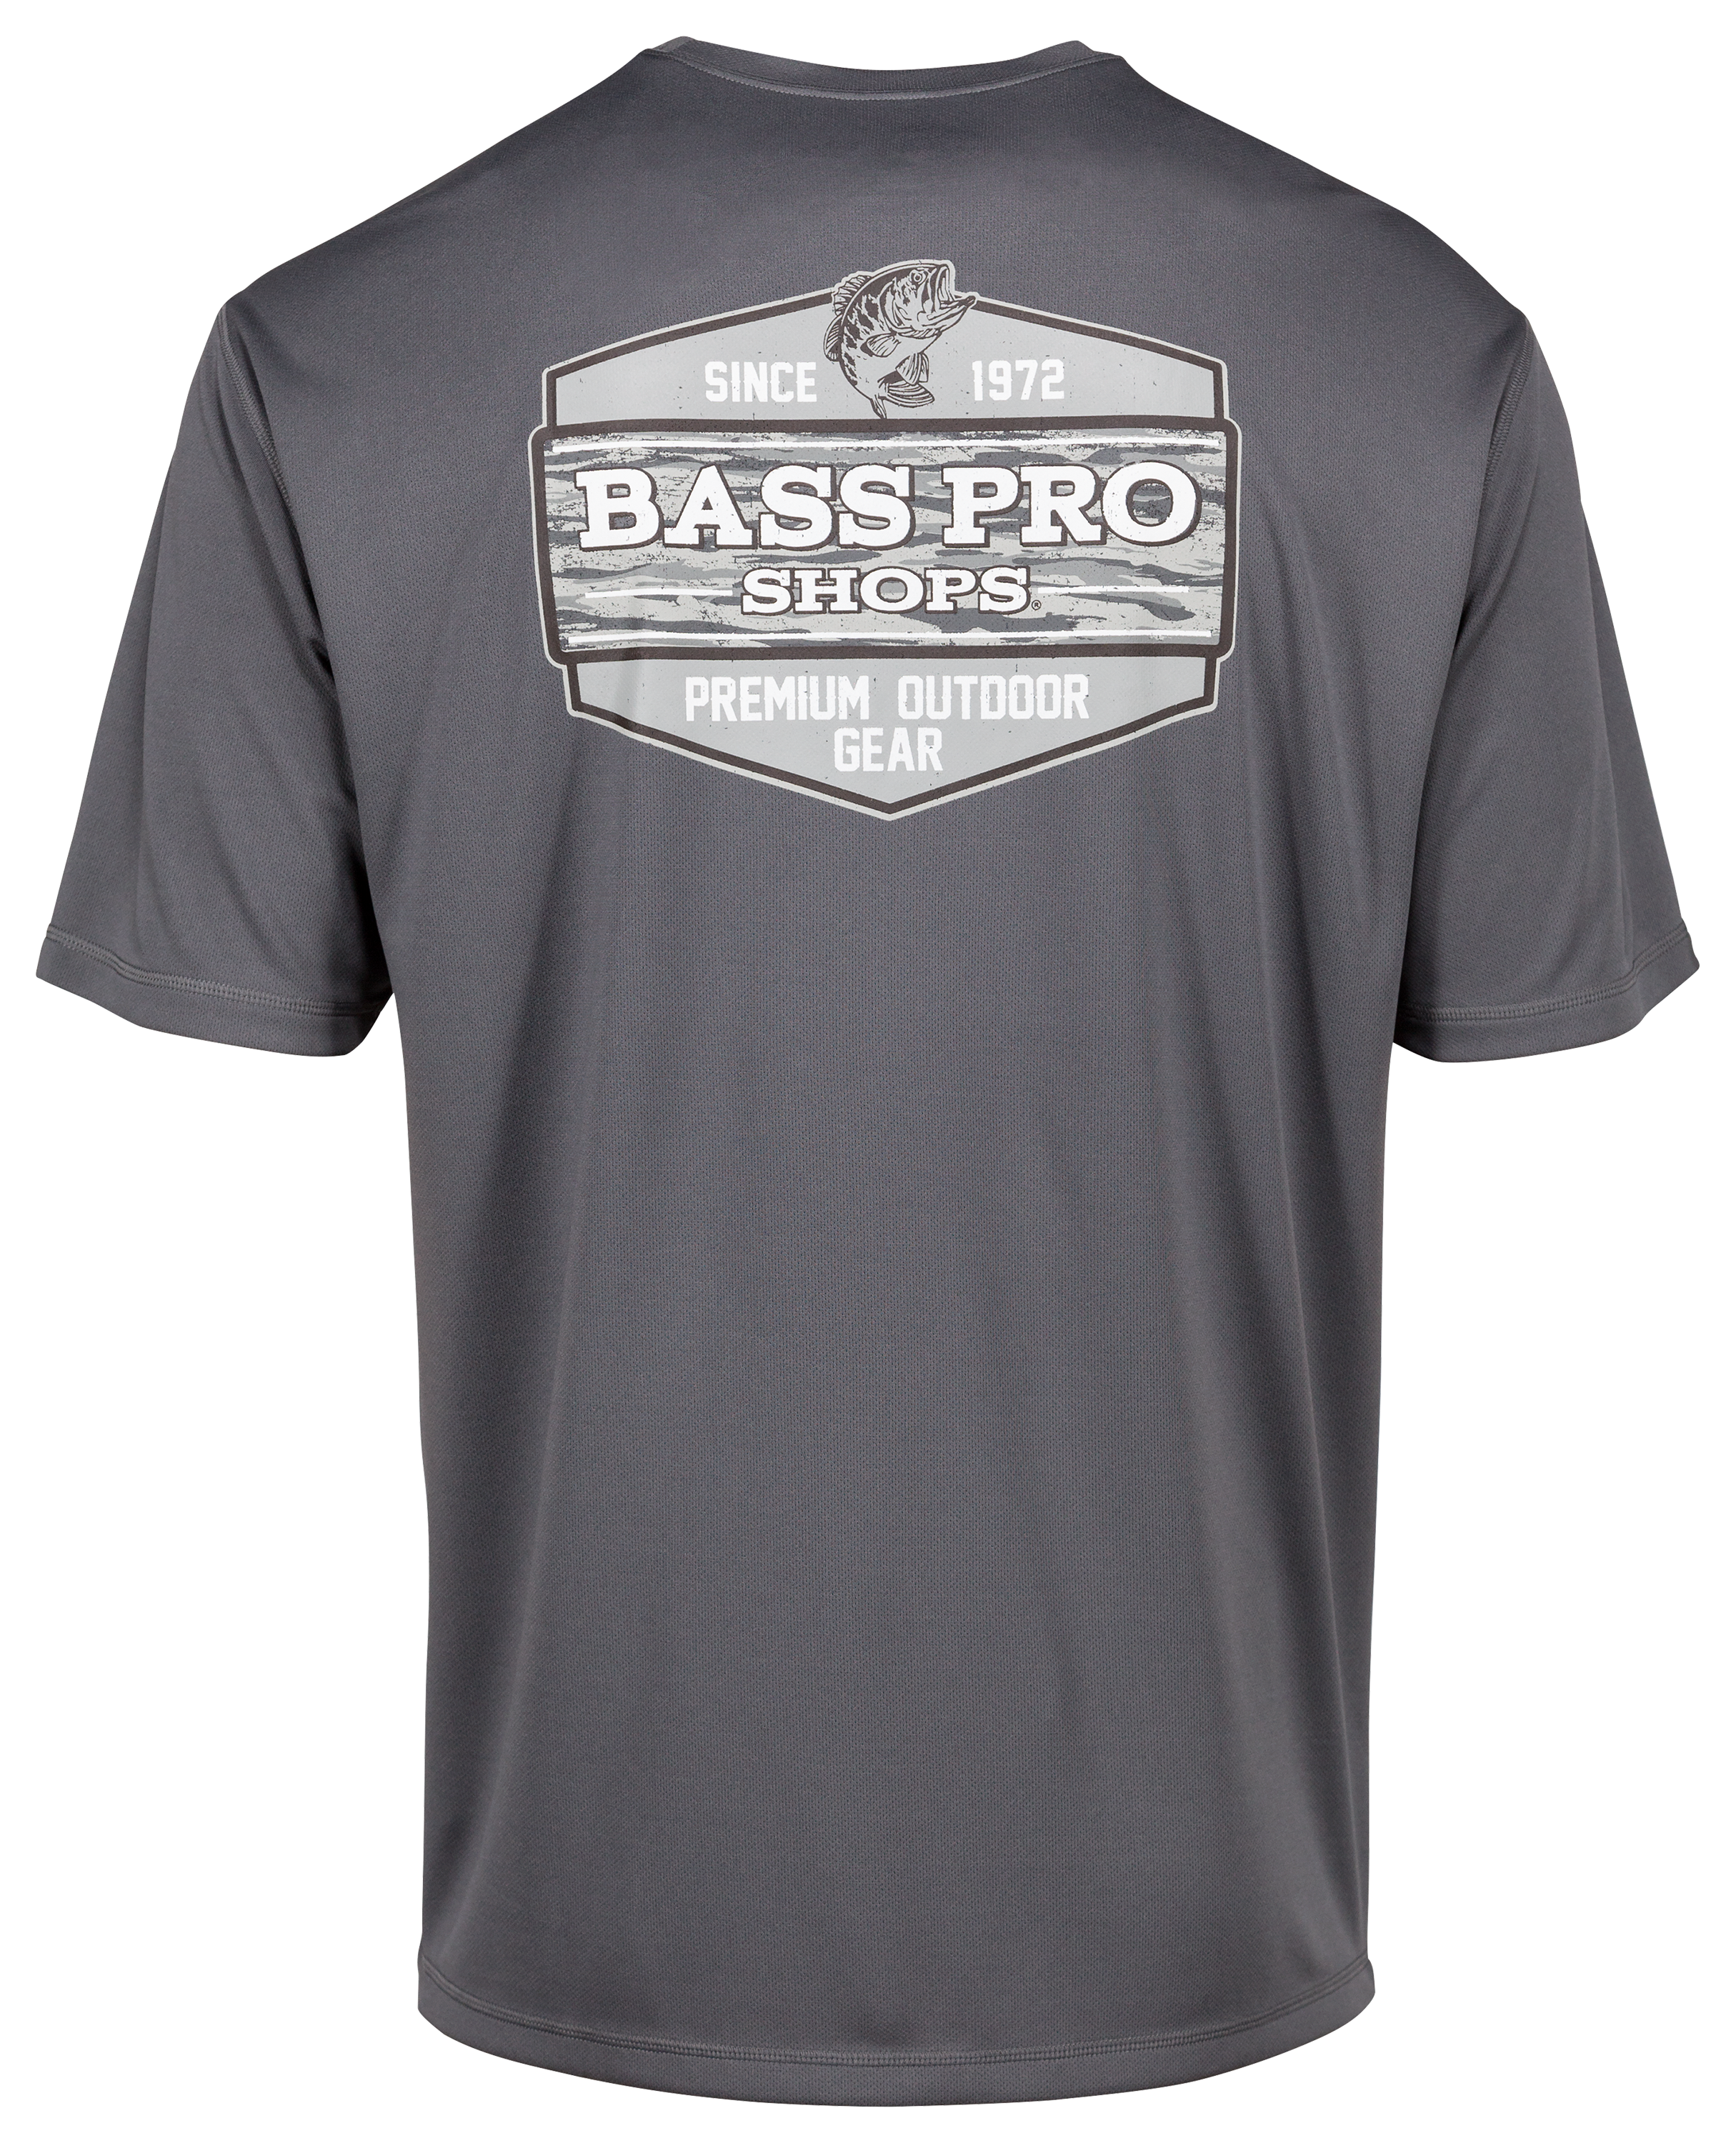 Bass Pro Shops Performance Outdoor Gear Short-Sleeve T-Shirt for Men